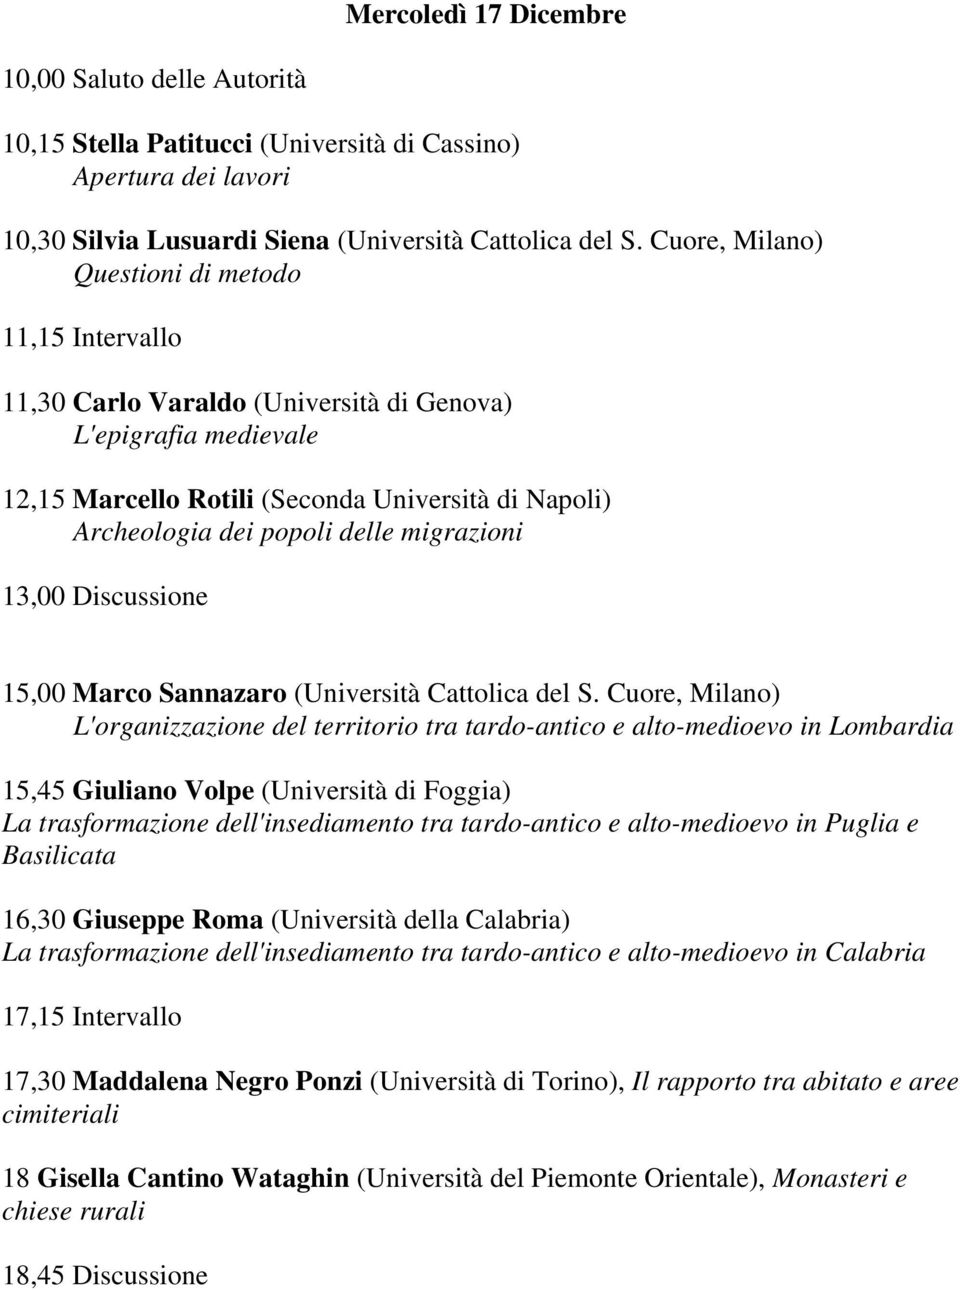 migrazioni 13,00 Discussione 15,00 Marco Sannazaro (Università Cattolica del S.